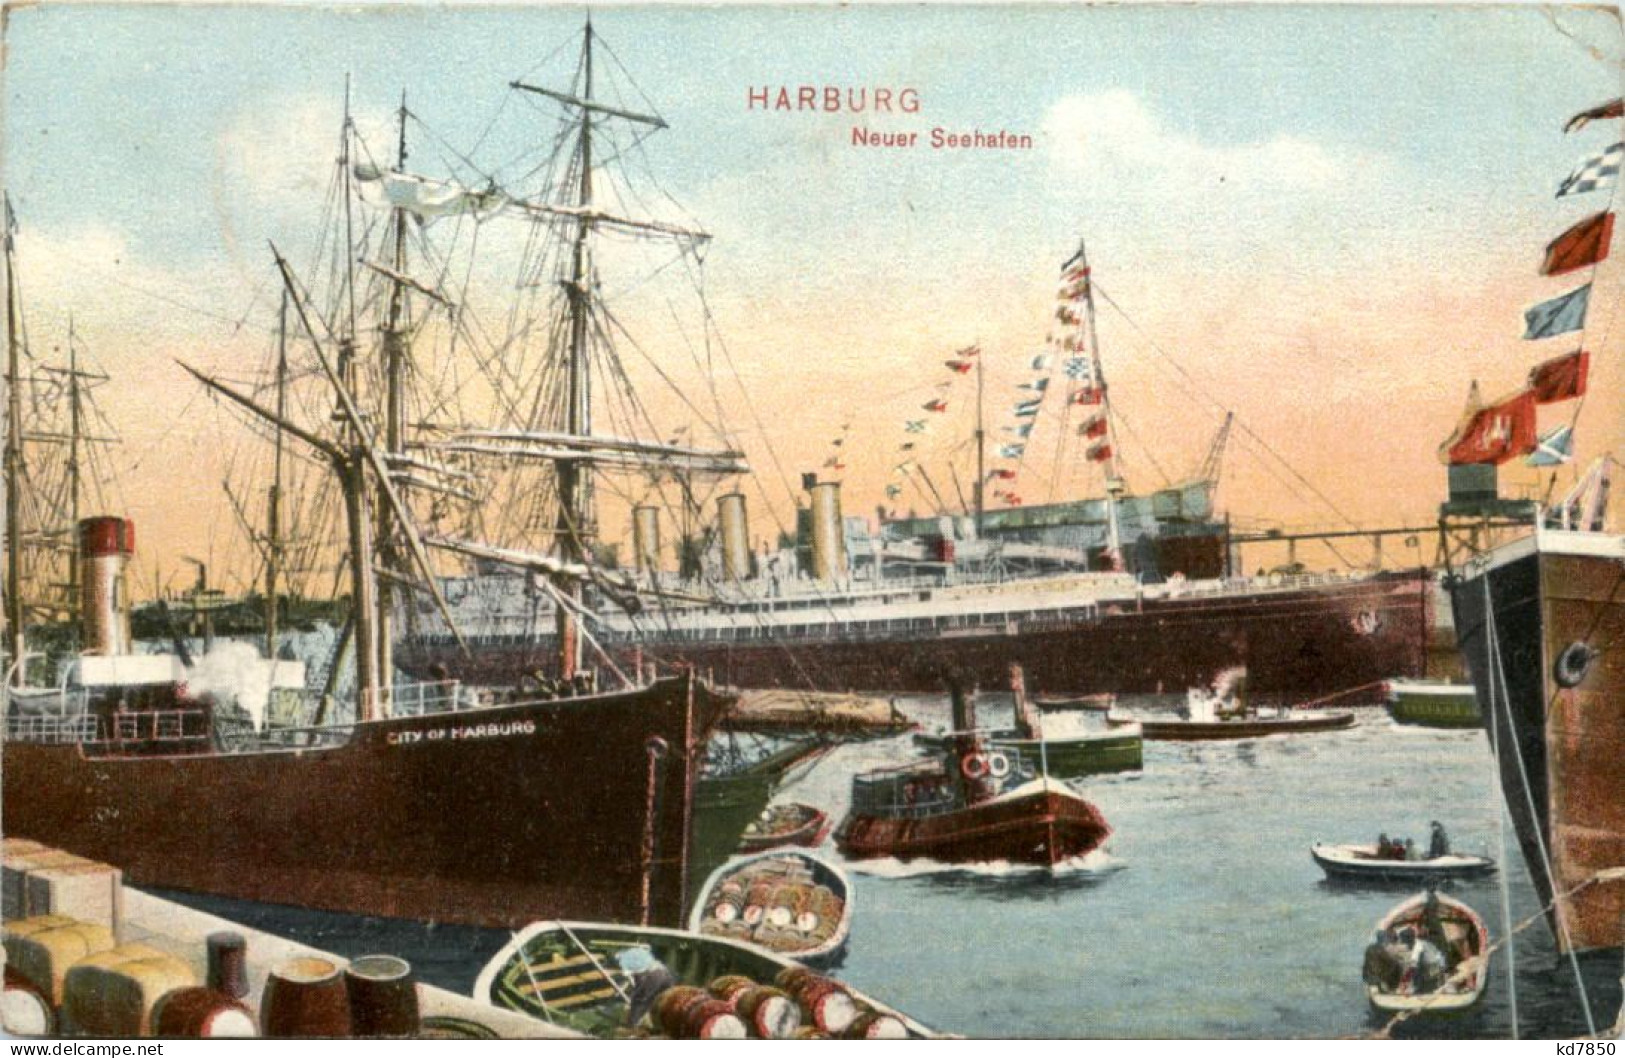 Harburg, Neuer Seehafen - Harburg